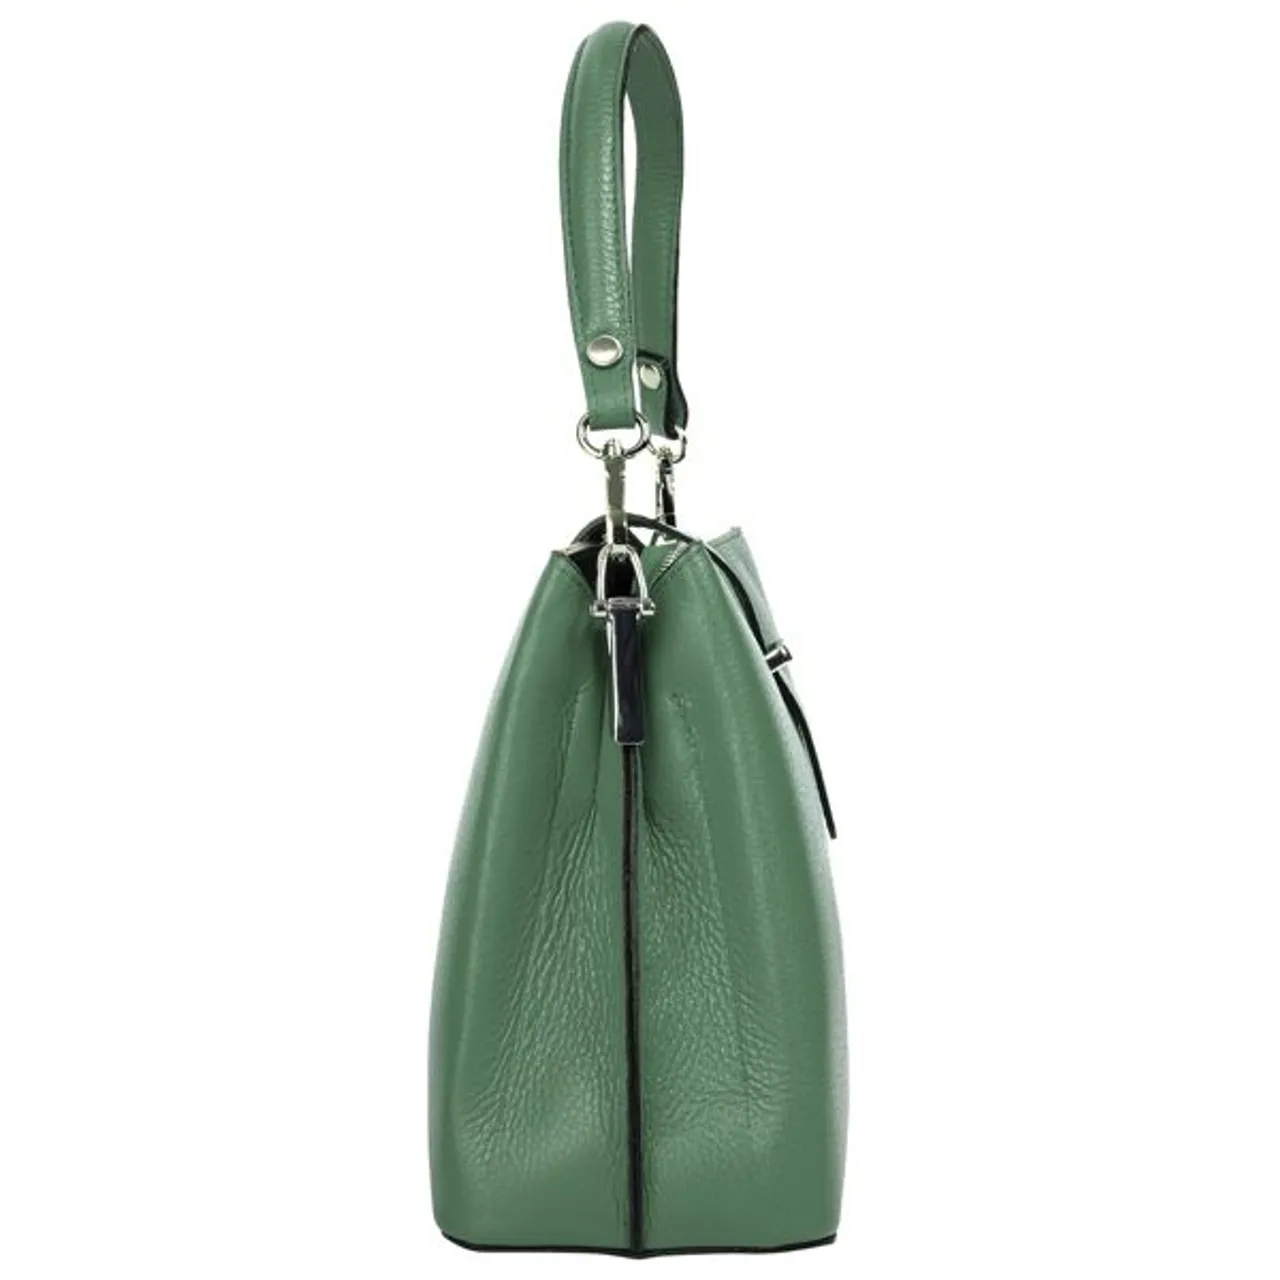 Henkeltasche CLUTY Gr. B/H/T: 25 cm x 21 cm x 12 cm onesize, grün Damen Taschen Handtaschen